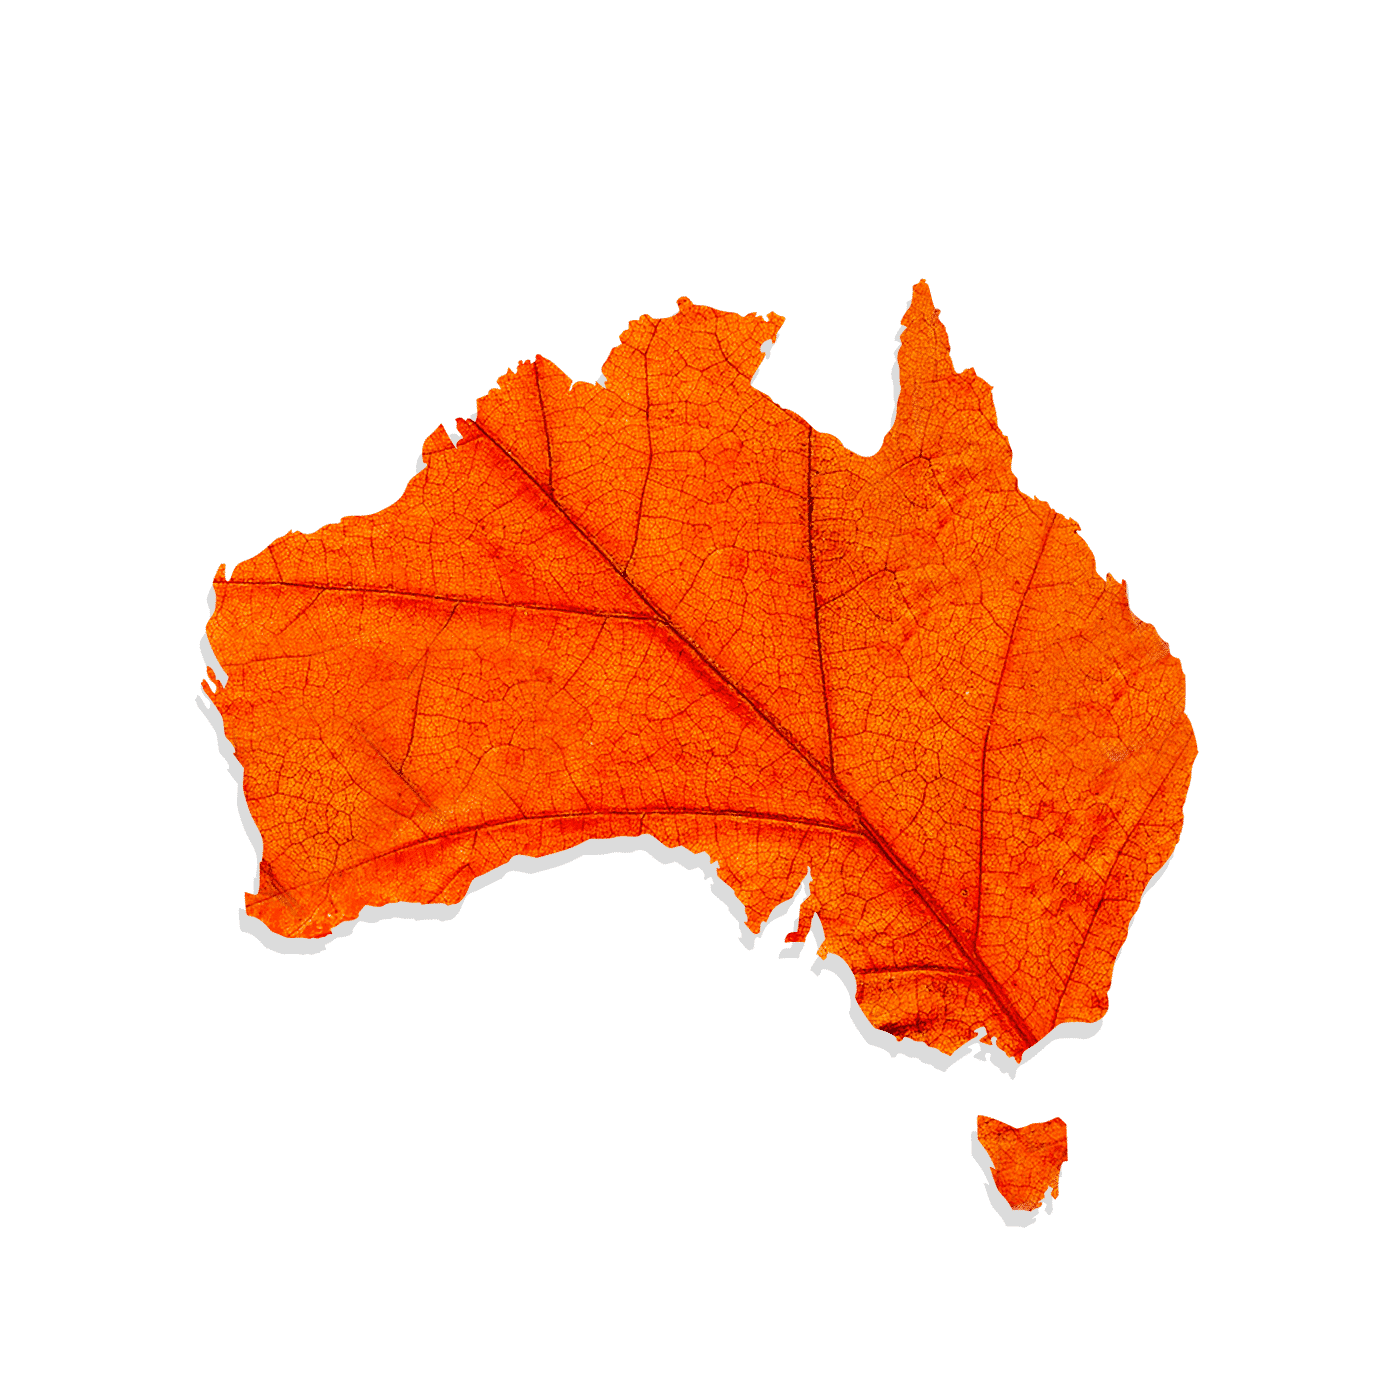 Eating Seasonally: Autumn in Australia